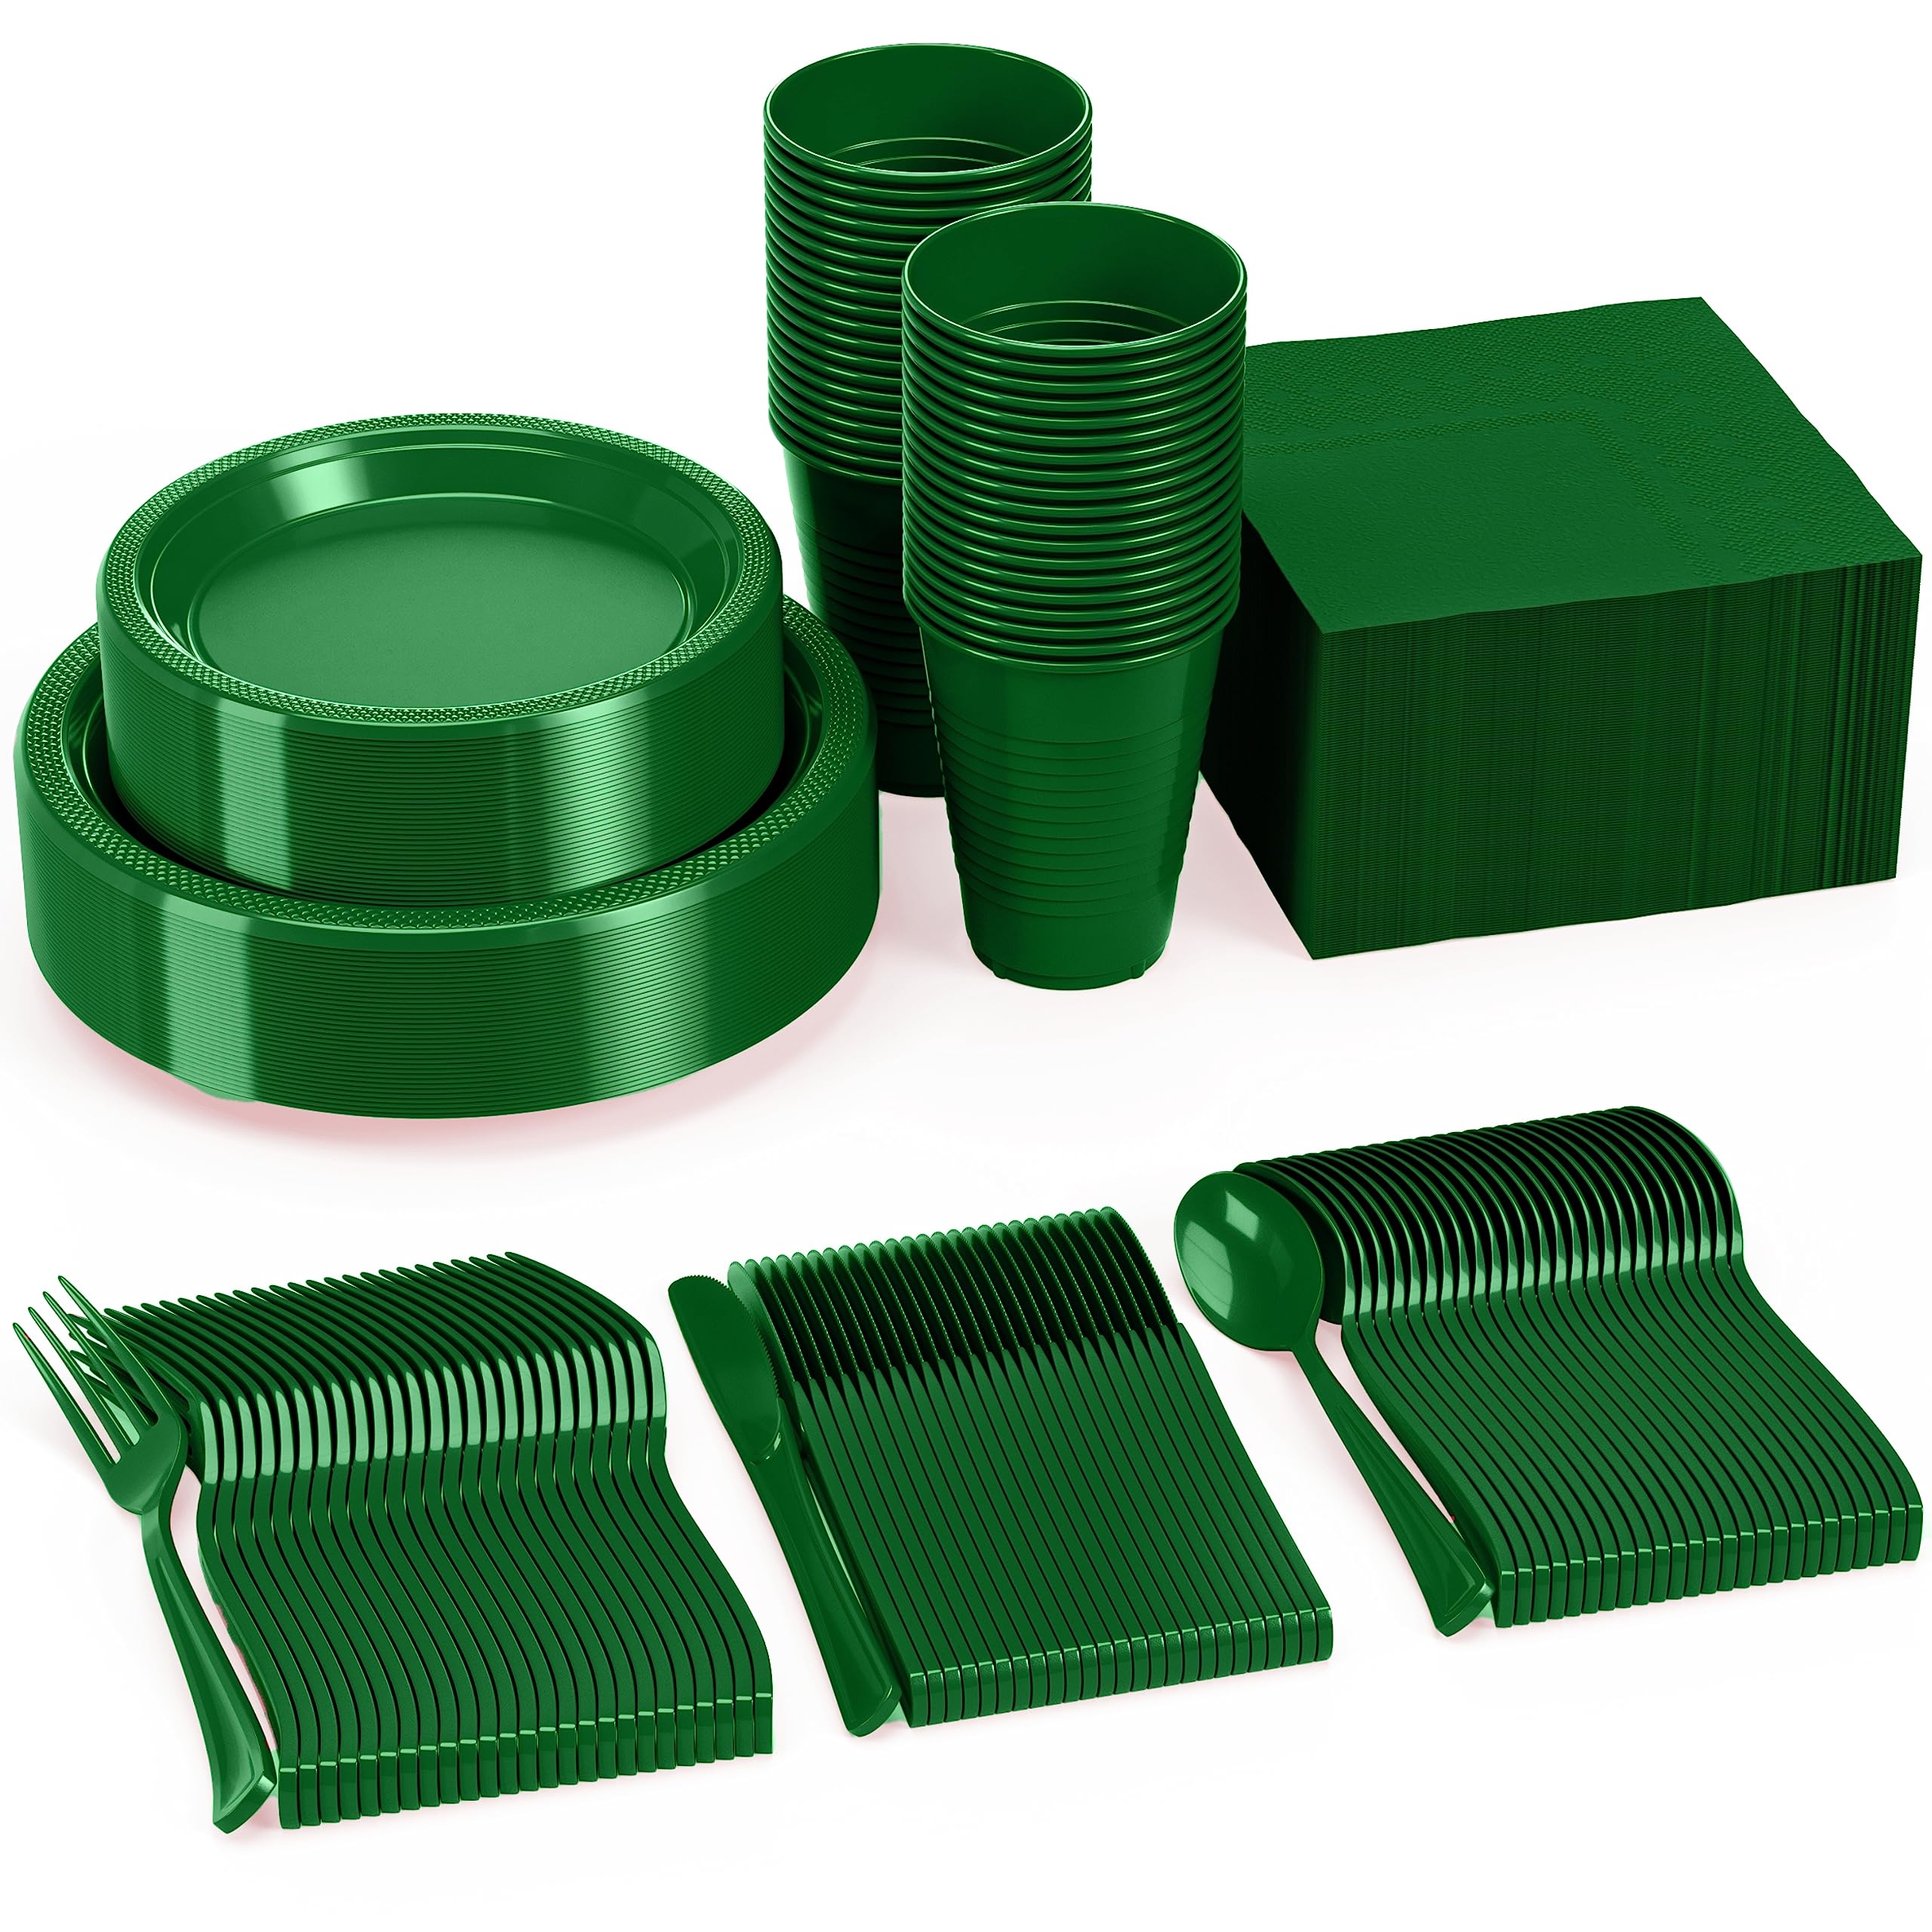 350 Pcs Emerald Green Plastic Disposable Tableware Set